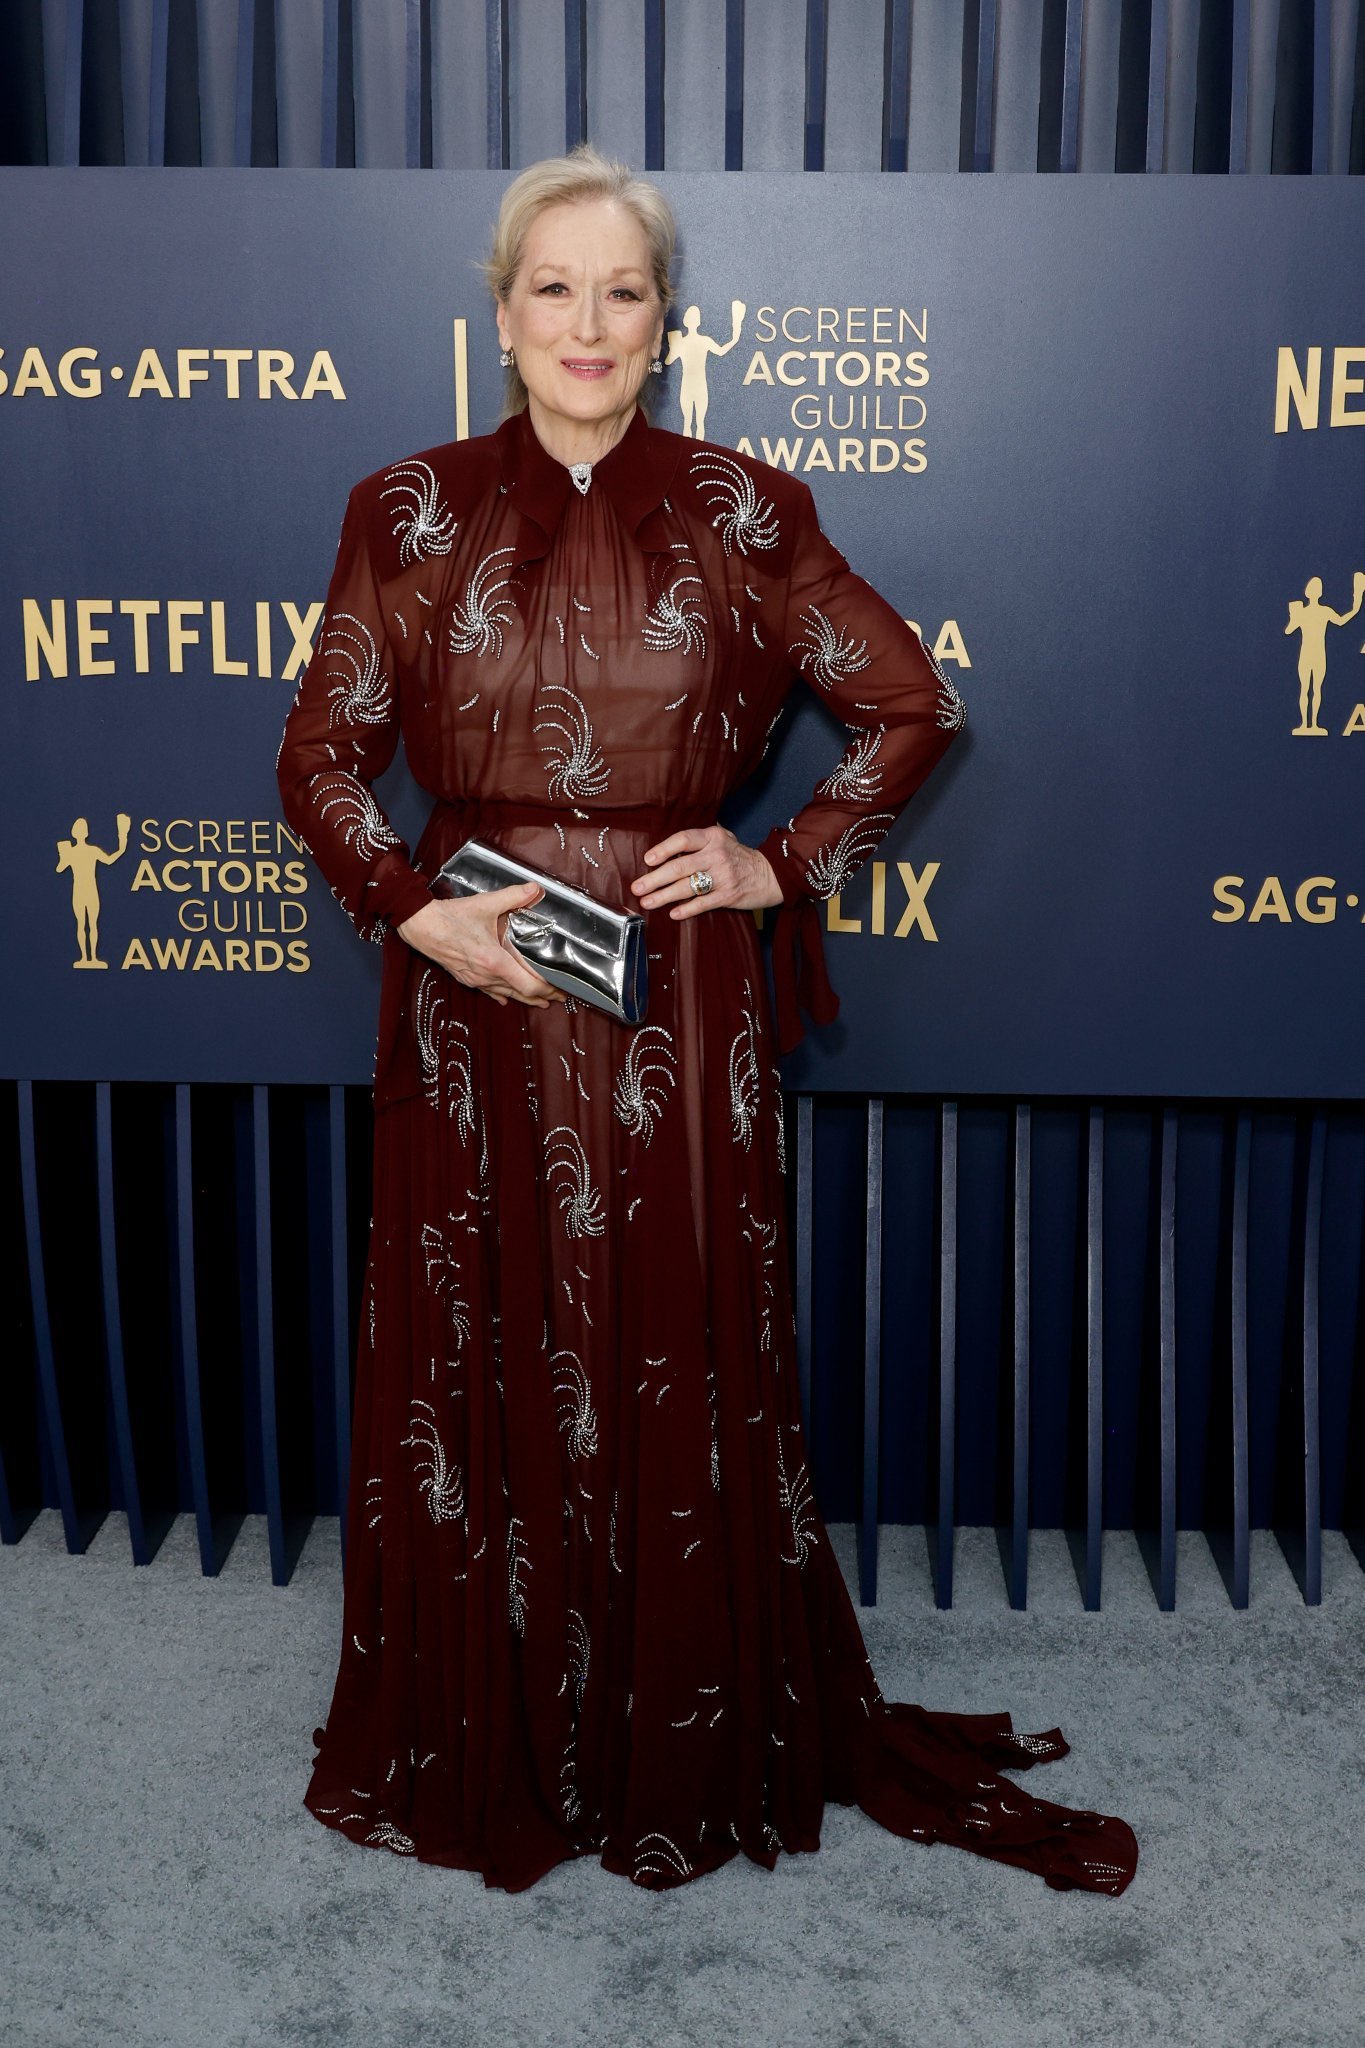 Meryl Streep  - vesiido-vinho-bordado - sag awards 2024 - verão - brasil - https://stealthelook.com.br